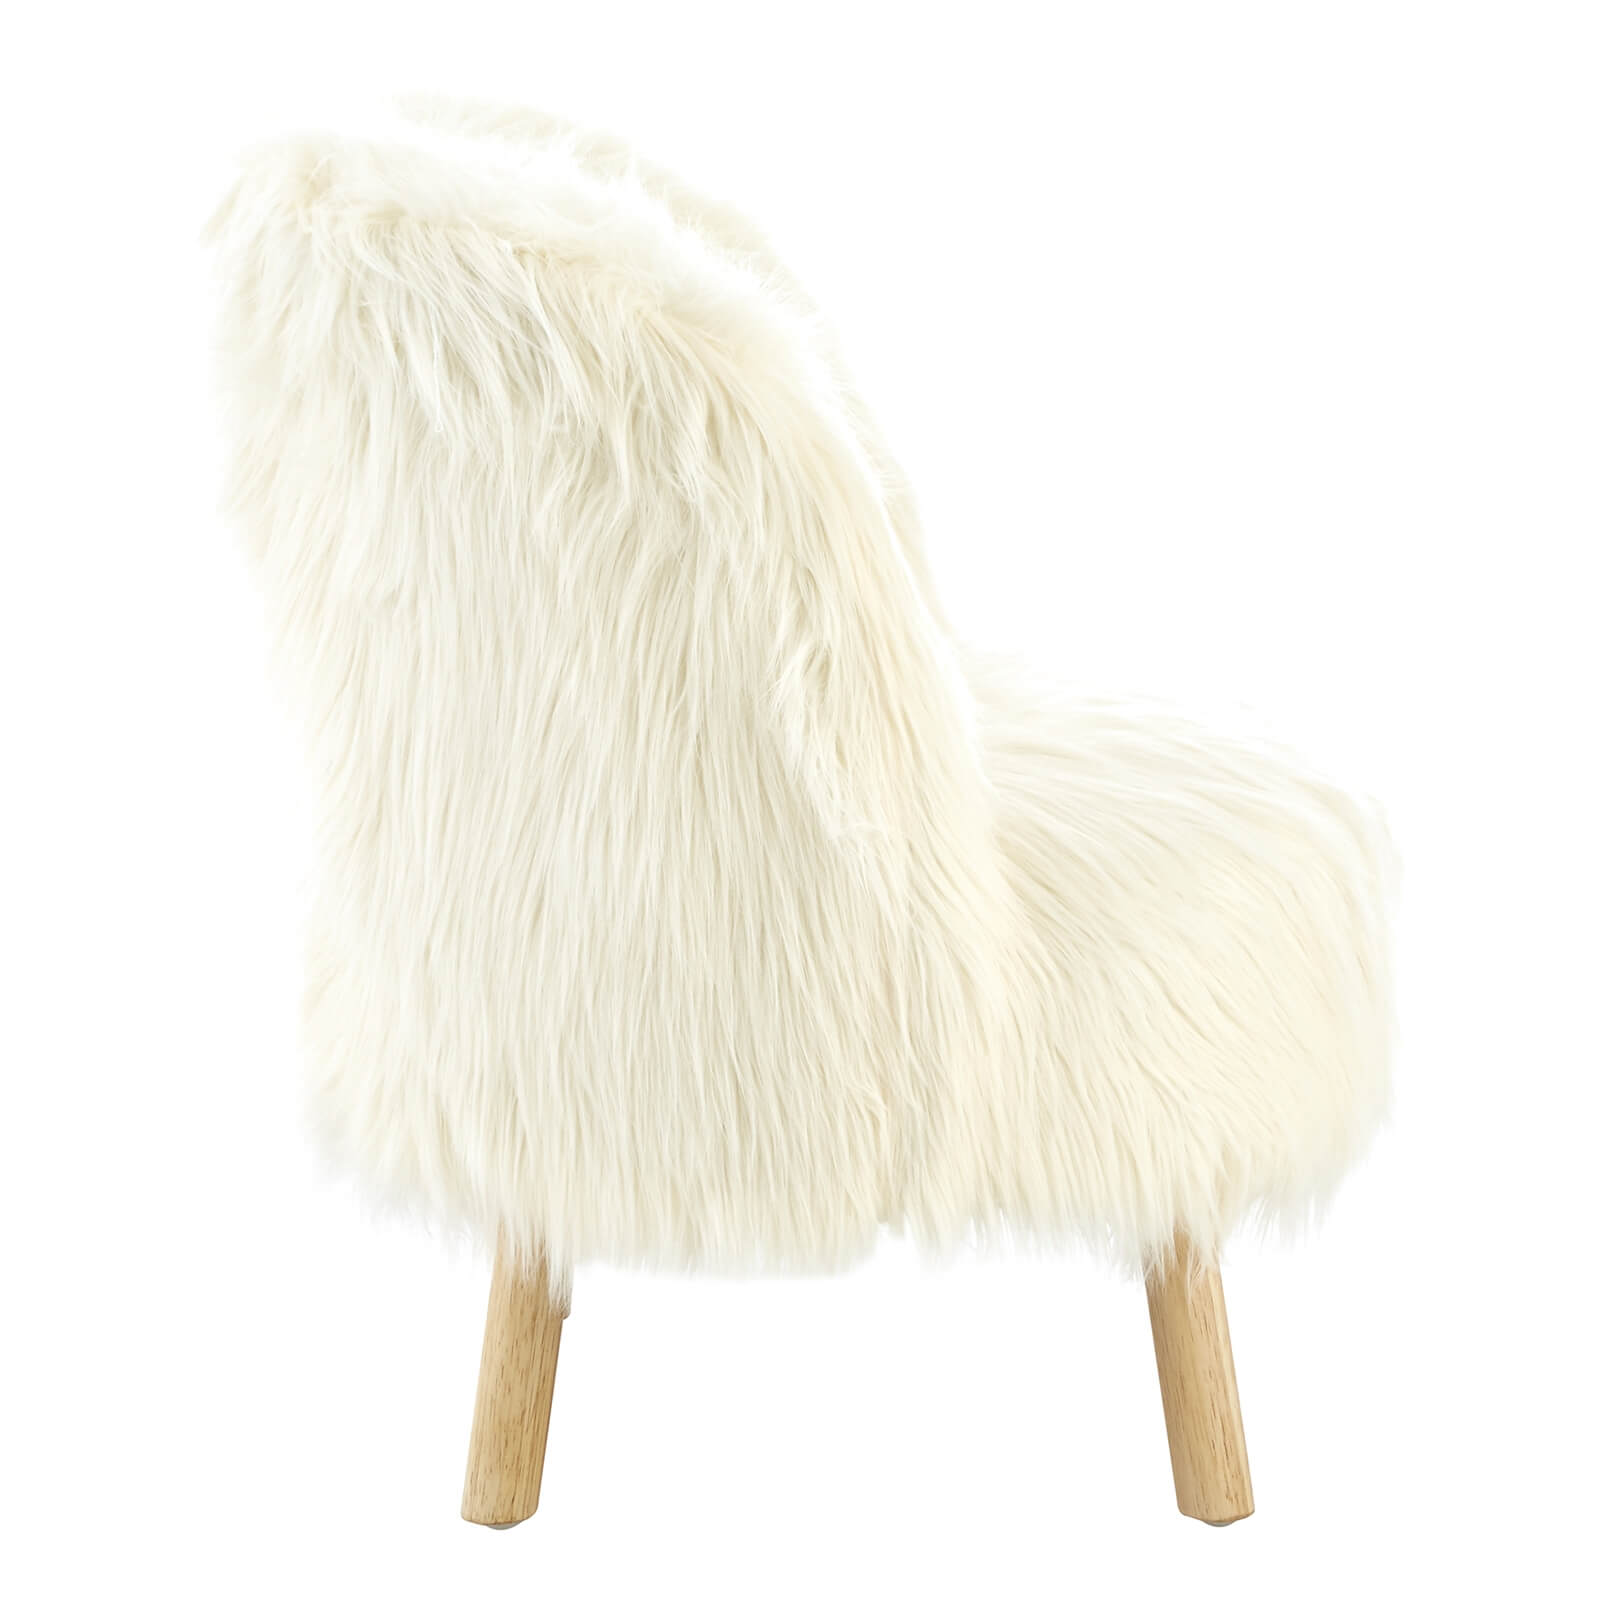 Kids Faux Fur Chair - White